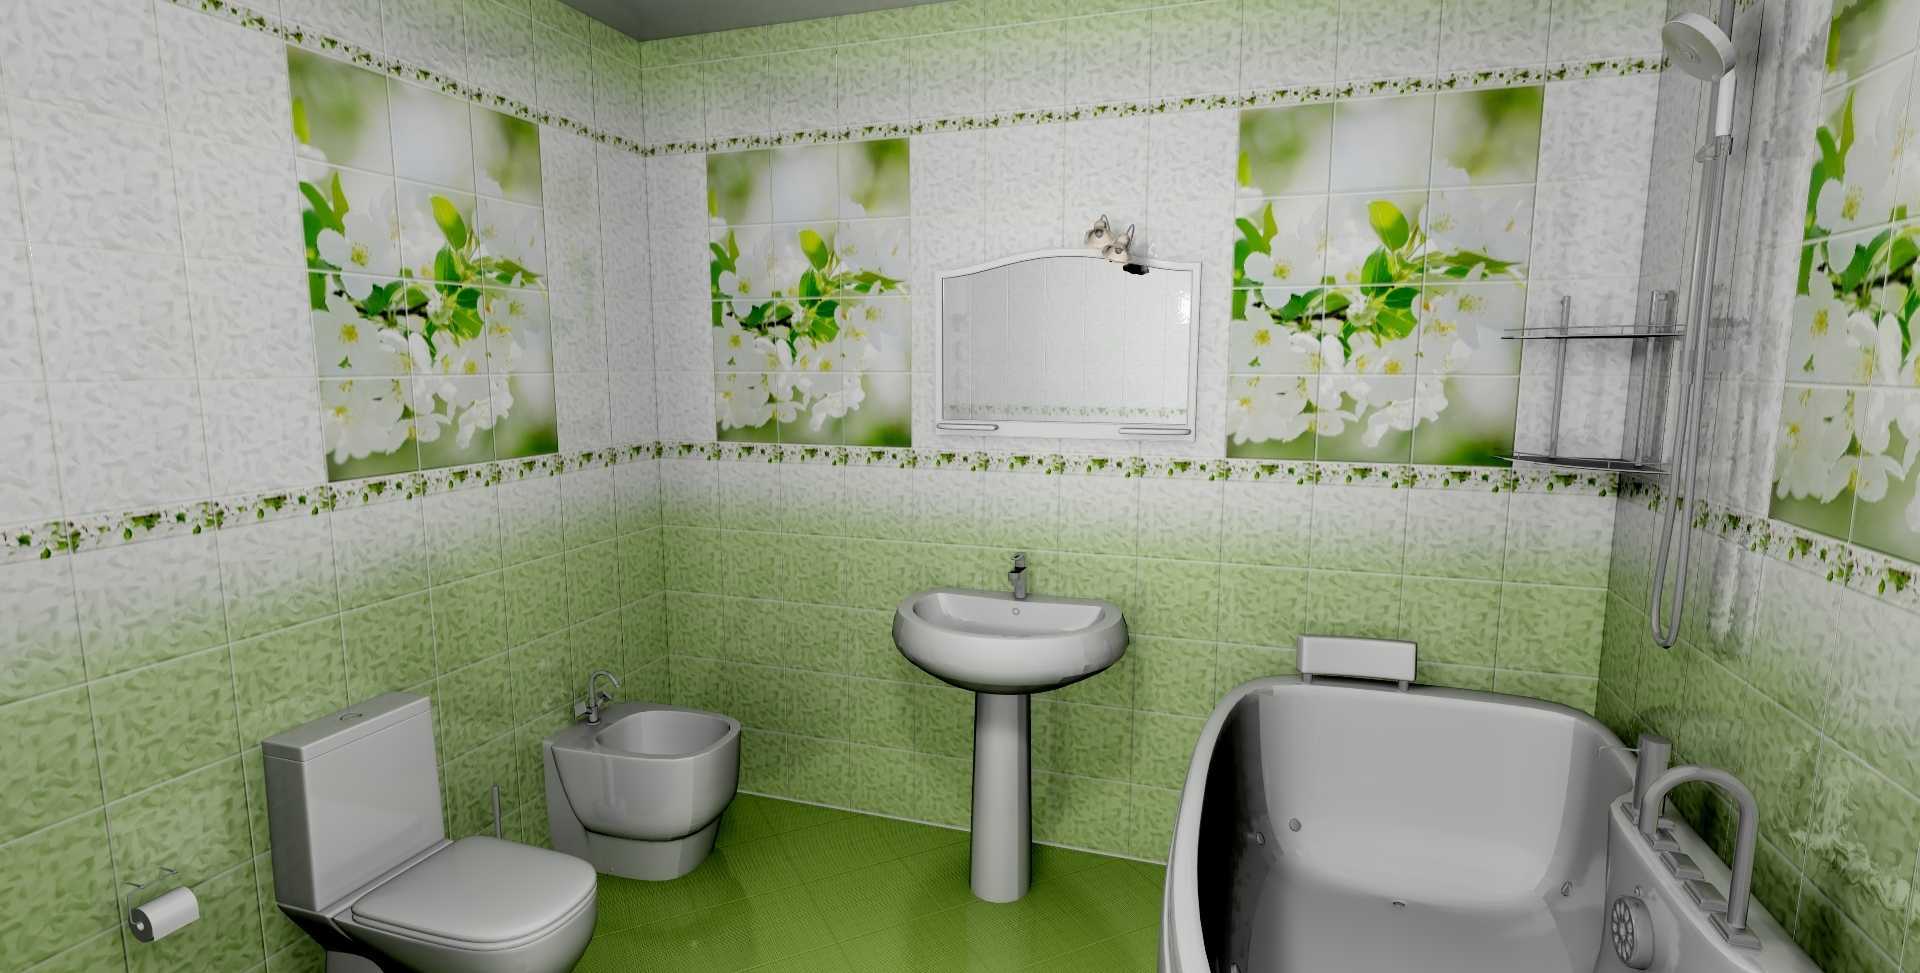 Влагостойкие панели для ванной - фото листовых и реечных стеновых пвх панелей